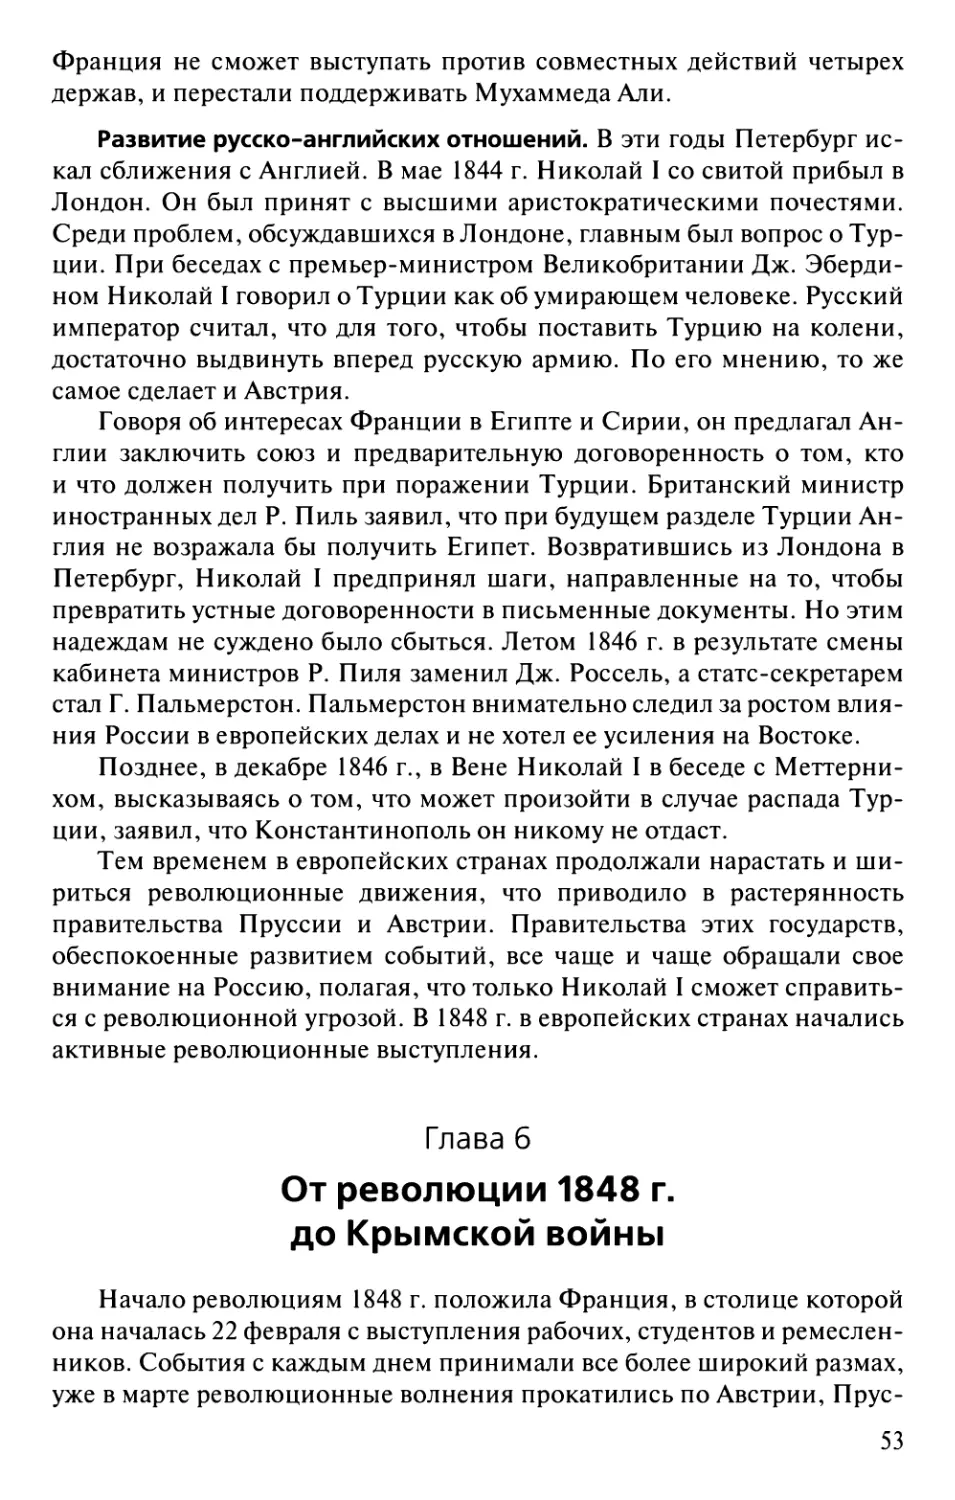 Глава 6. От революции 1848 г. до Крымской войны